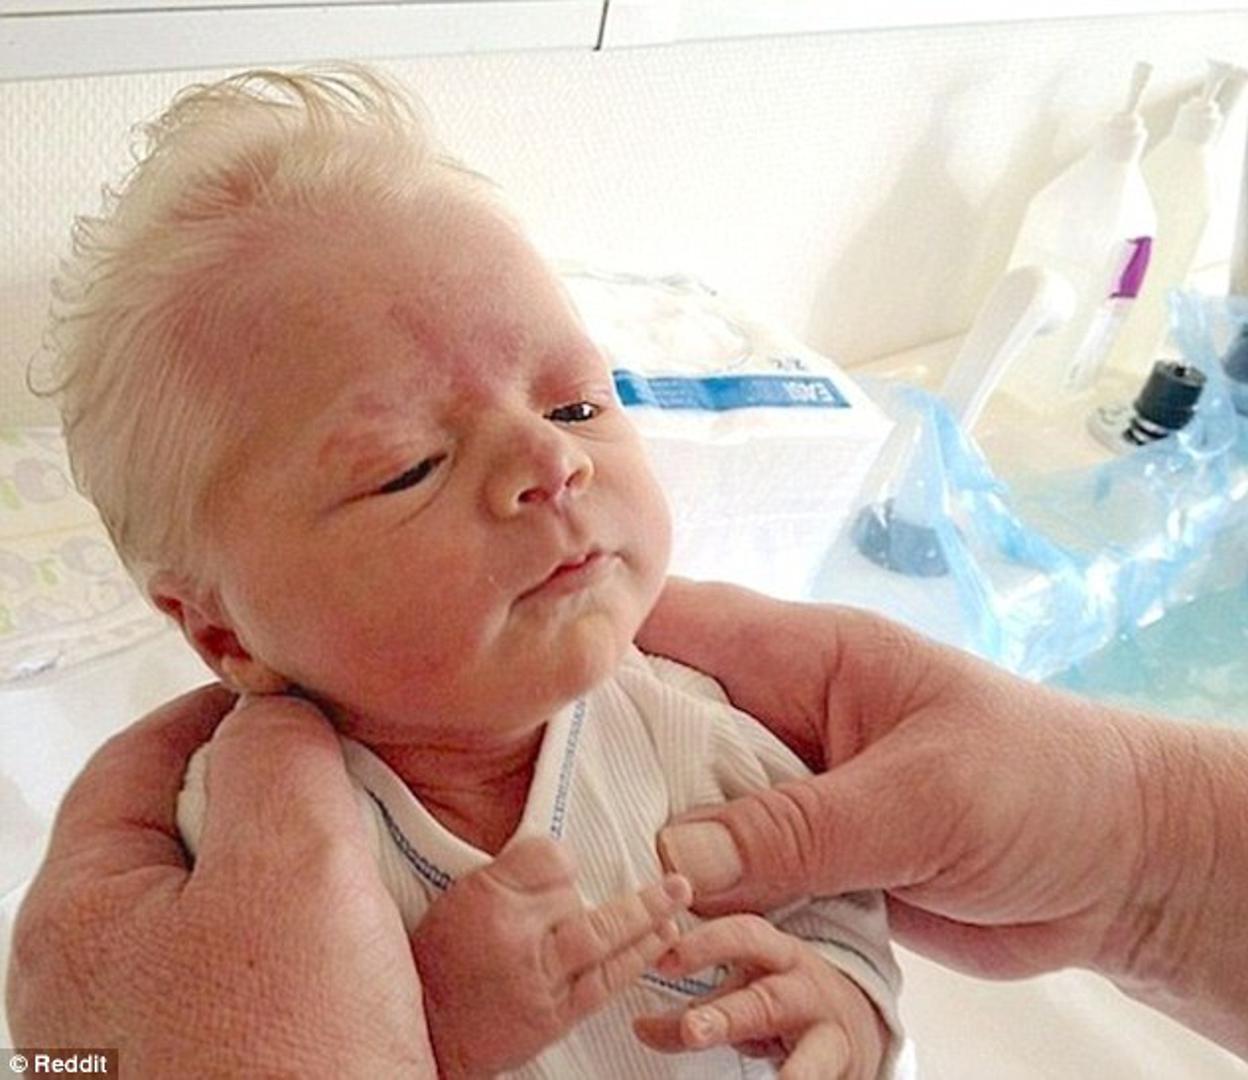 Beba Bence rođen je u Mađarskoj, a ono što je šokiralo jest činjenica da je rođen s jako mnogo kose, ali i to da je njegova kosa potpuno bijela. Iako su već zabilježeni slični slučajevi, doktori nisu jedinstveni u stavu u koju kategoriju ovaj slučaj svrstati.